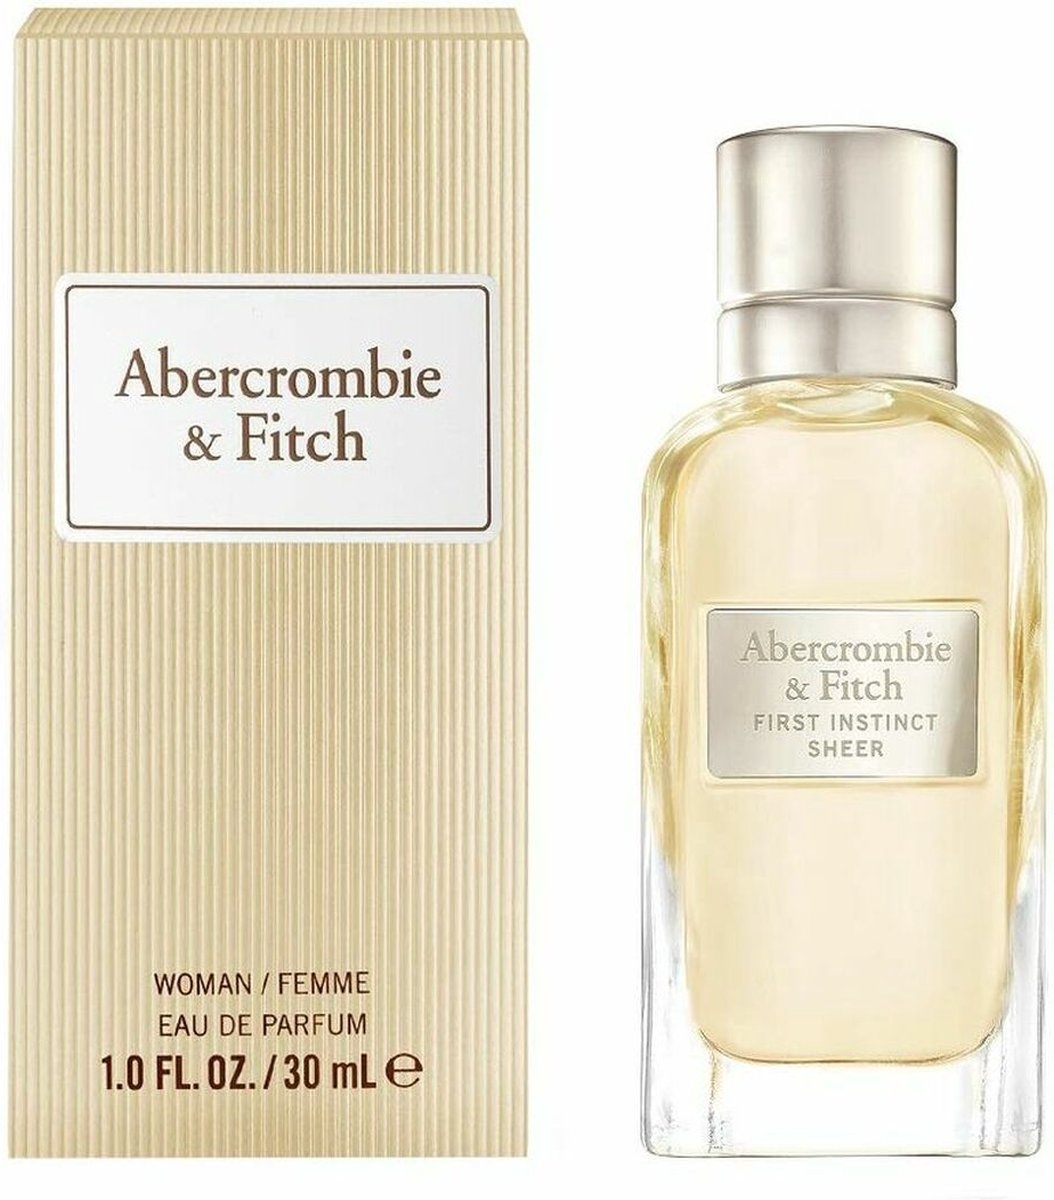 Abercrombie and Fitch - First Instinct Sheer - Eau De Parfum  30ml - Verpakking beschadigd